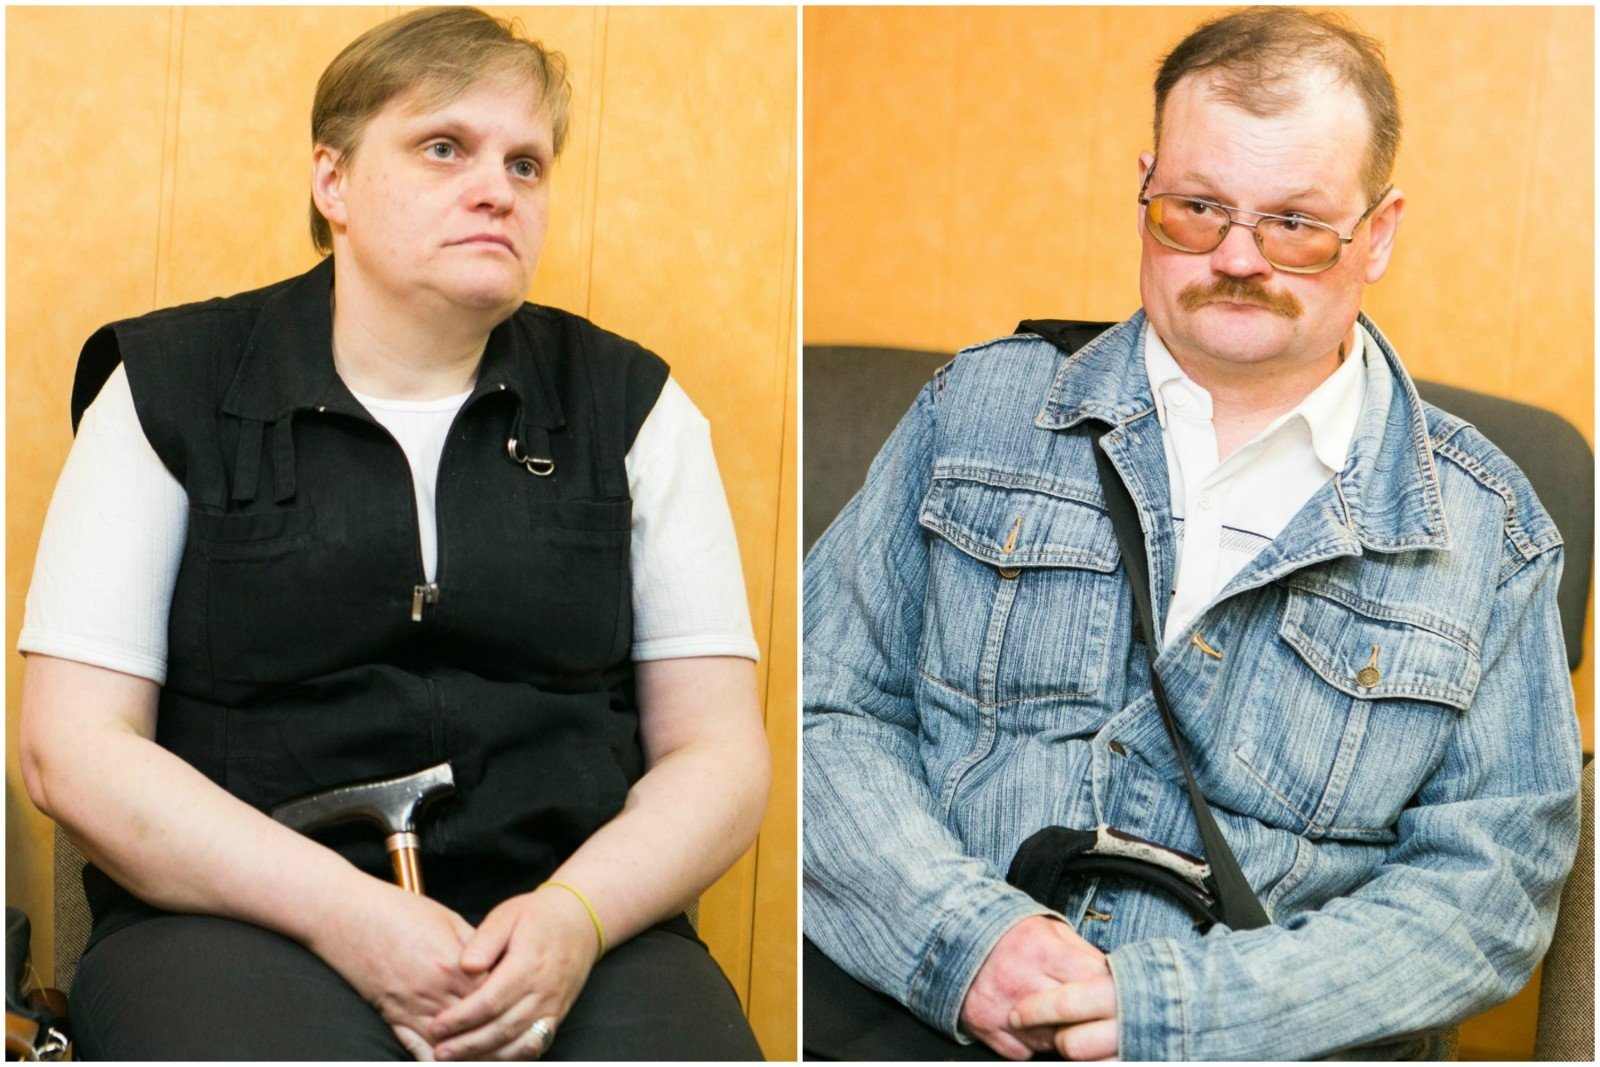 Lietuva, kuri šokiruoja: išžaginęs seserį teisinosi, kad ją supainiojo su žmona